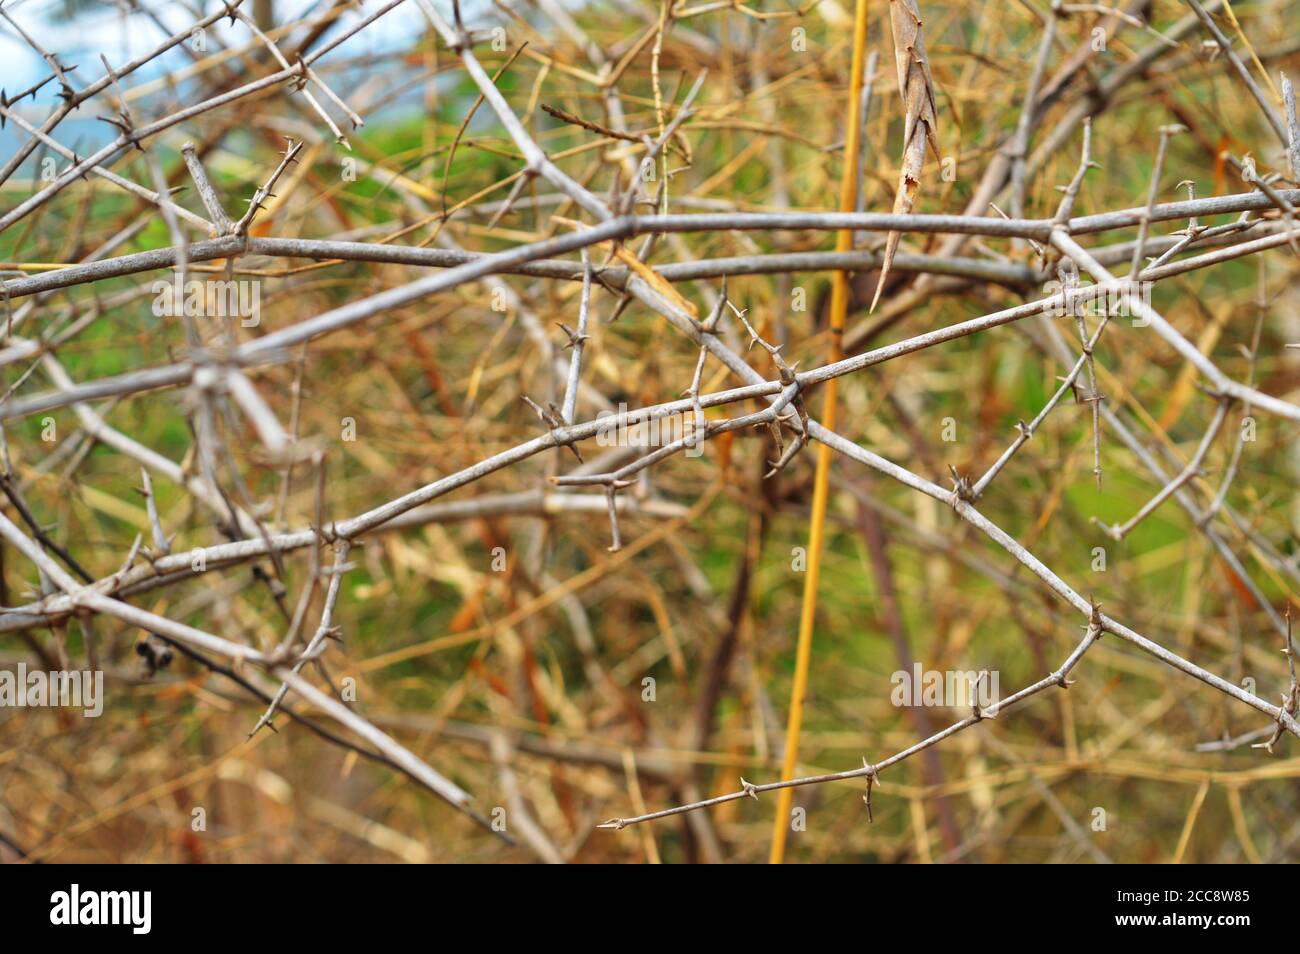 rami spinoso che formano una maglia nella foresta. Questo forma una recinzione naturale per certe piante, in quanto gli animali non possono attraverserla. Foto Stock